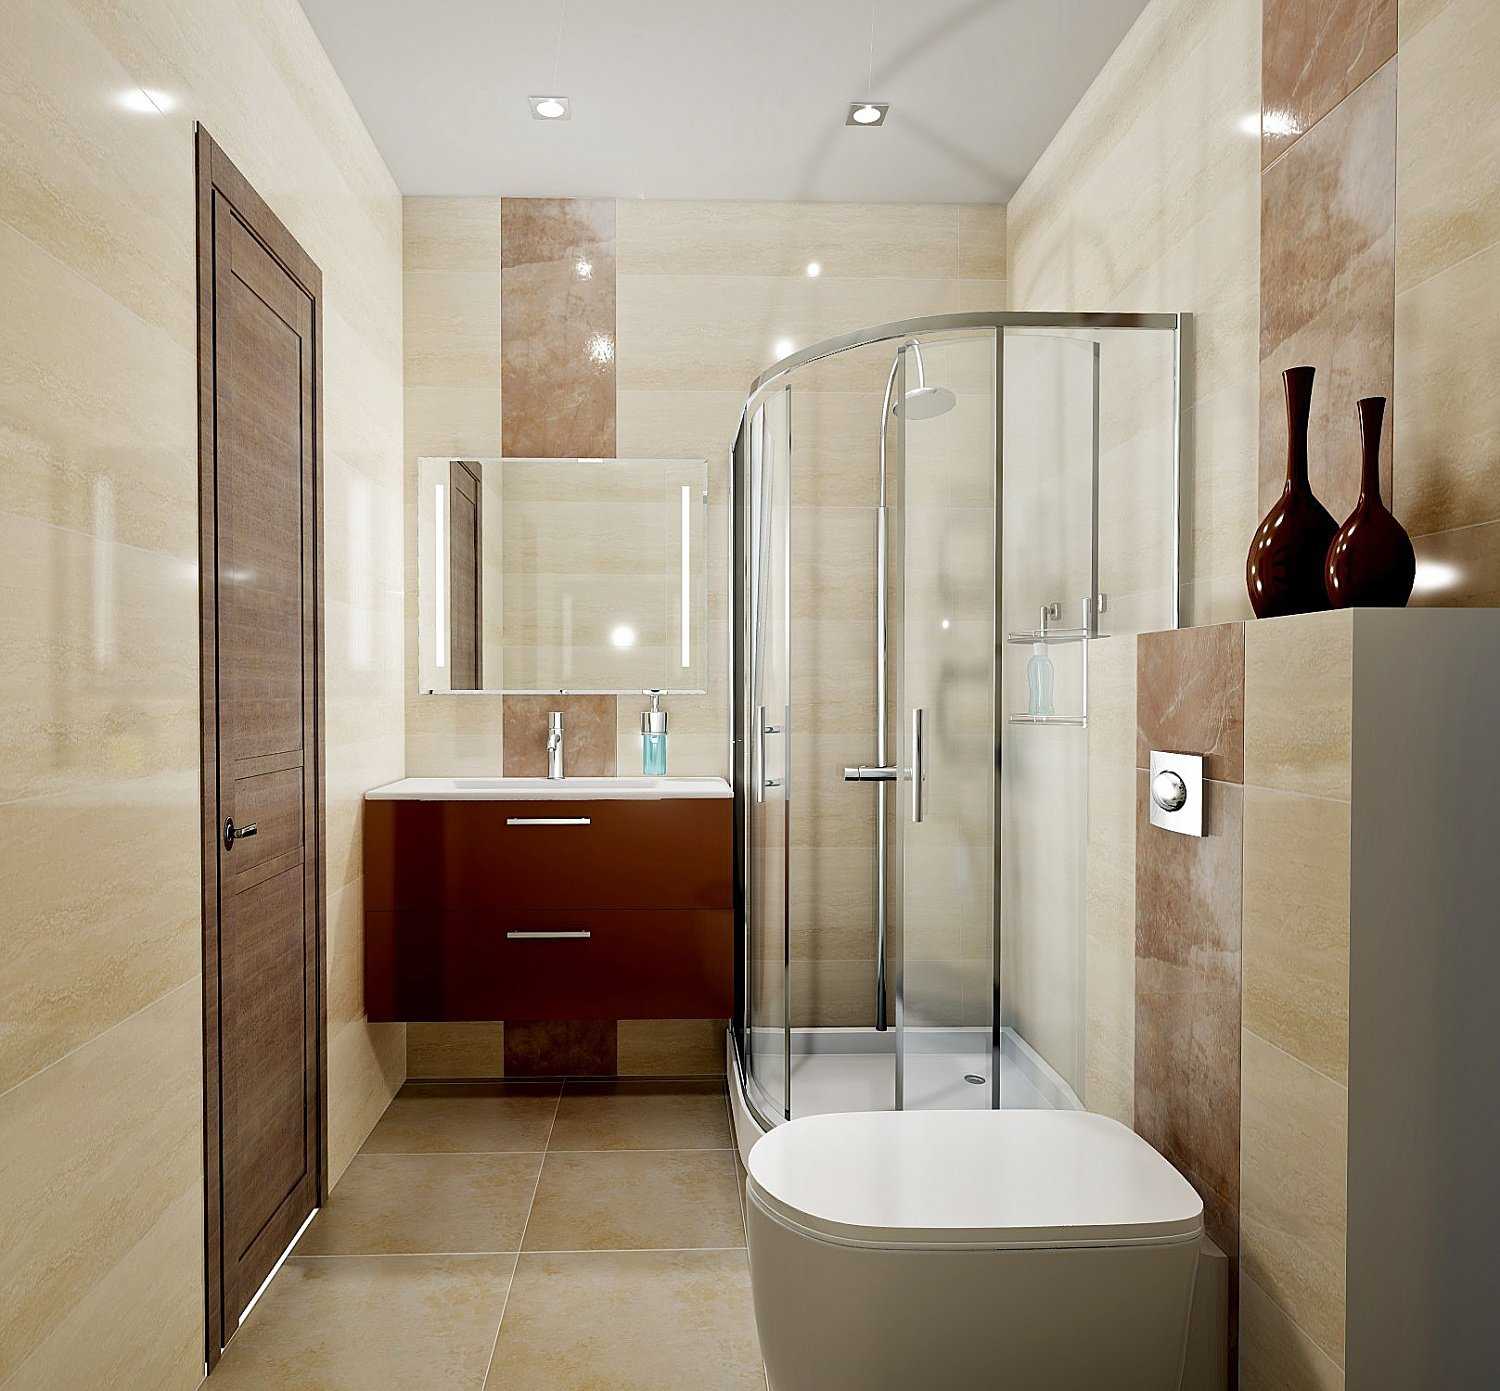 Дизайн ванной комнаты 4 м2. как создать стильный дизайн ванной комнаты 4 кв м?